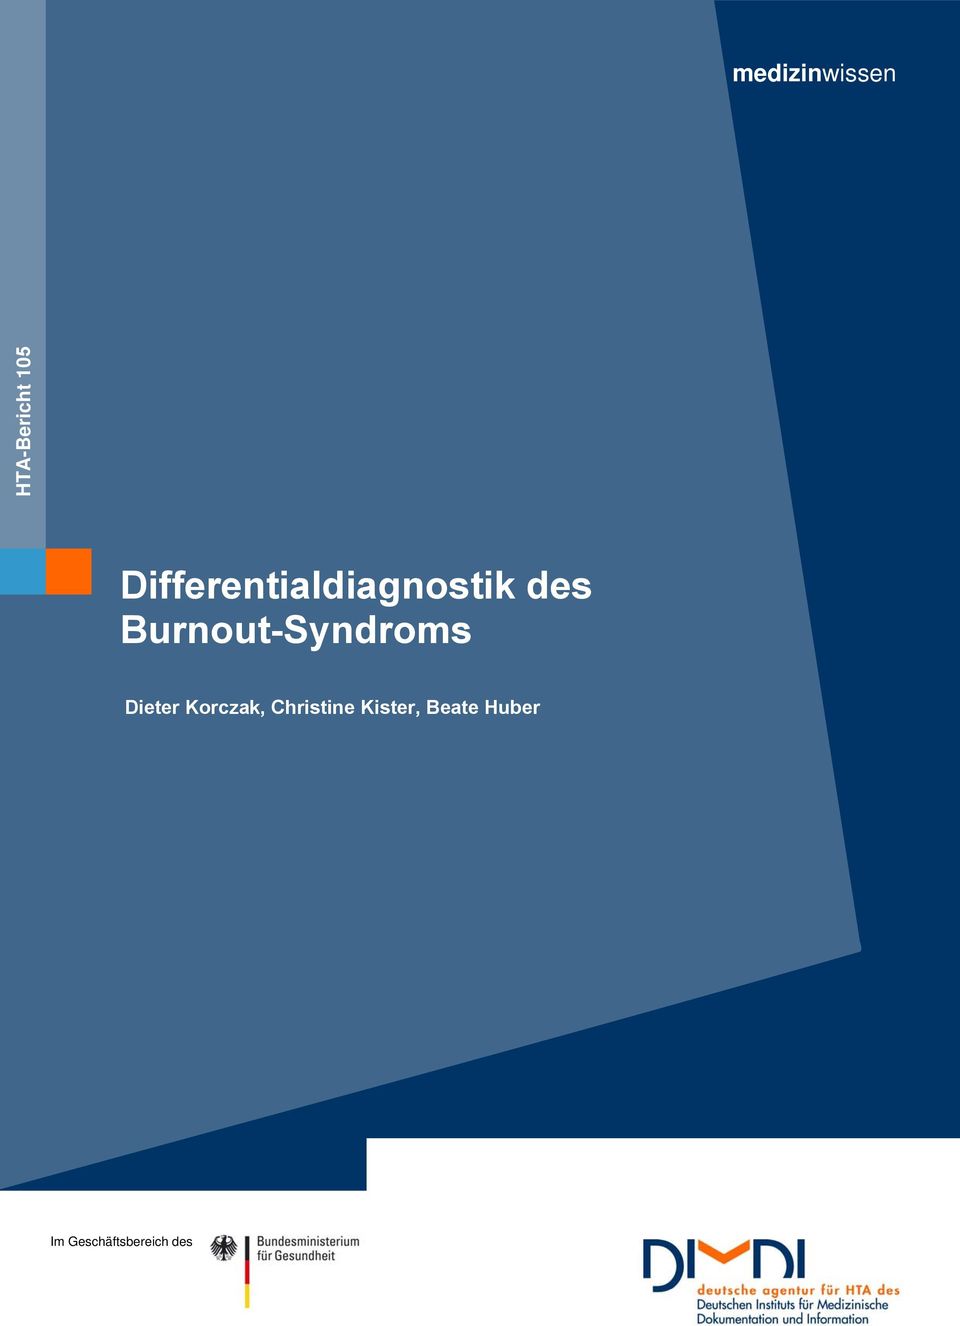 Burnout-Syndroms Dieter Korczak,